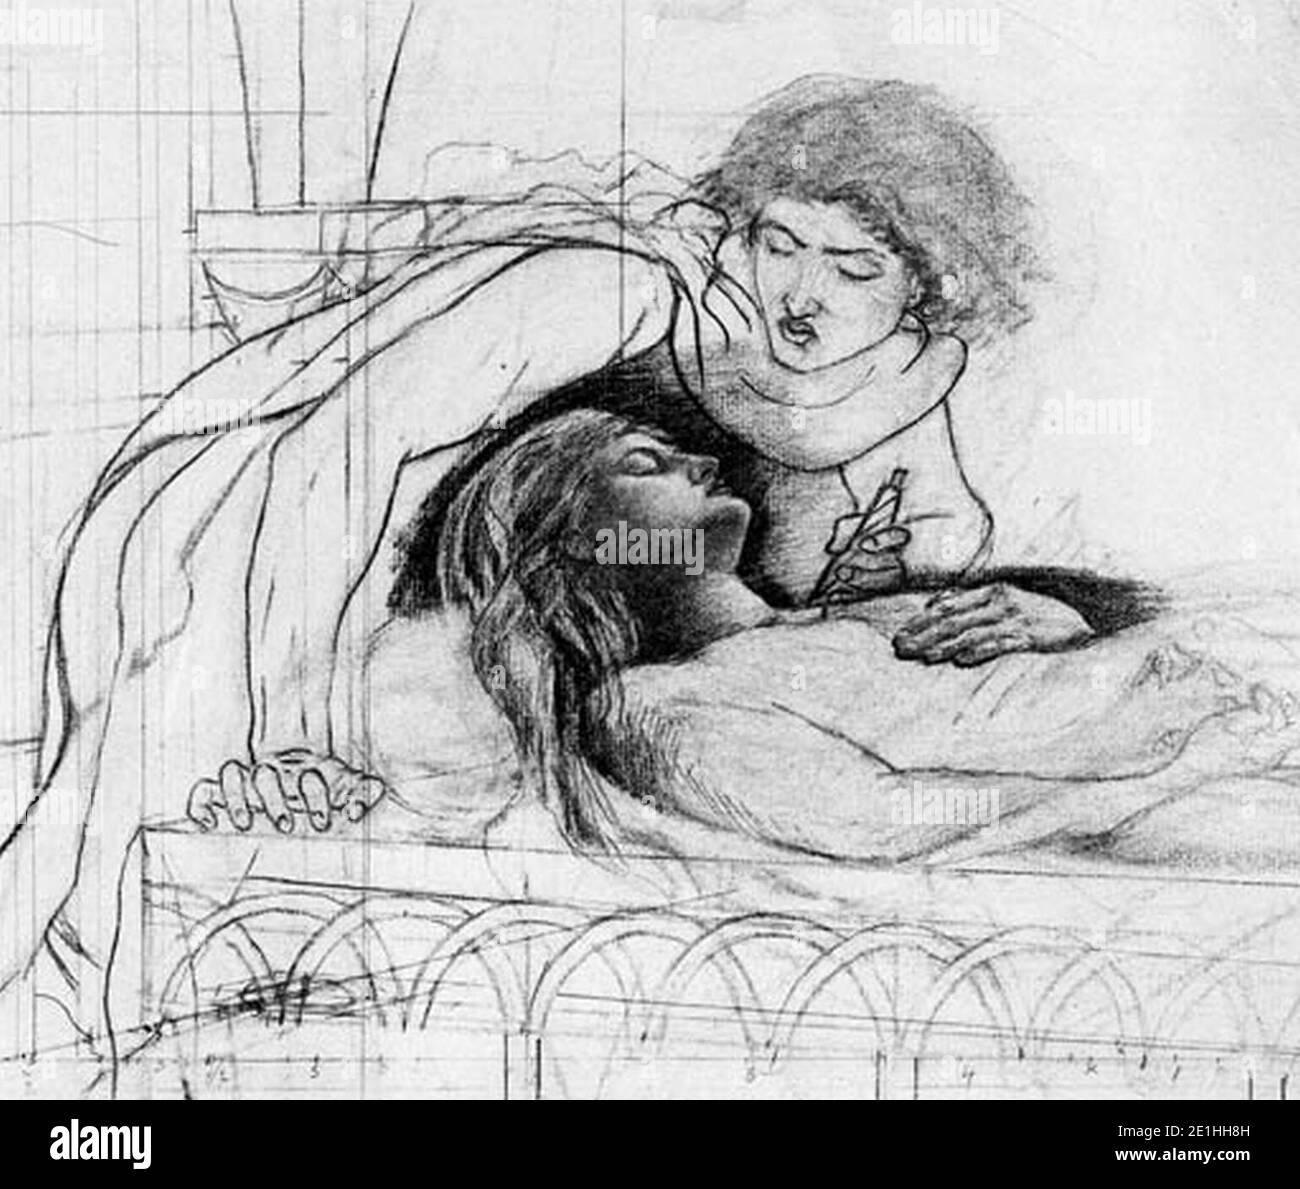 Ромео и Джульетта рисунок карандашом